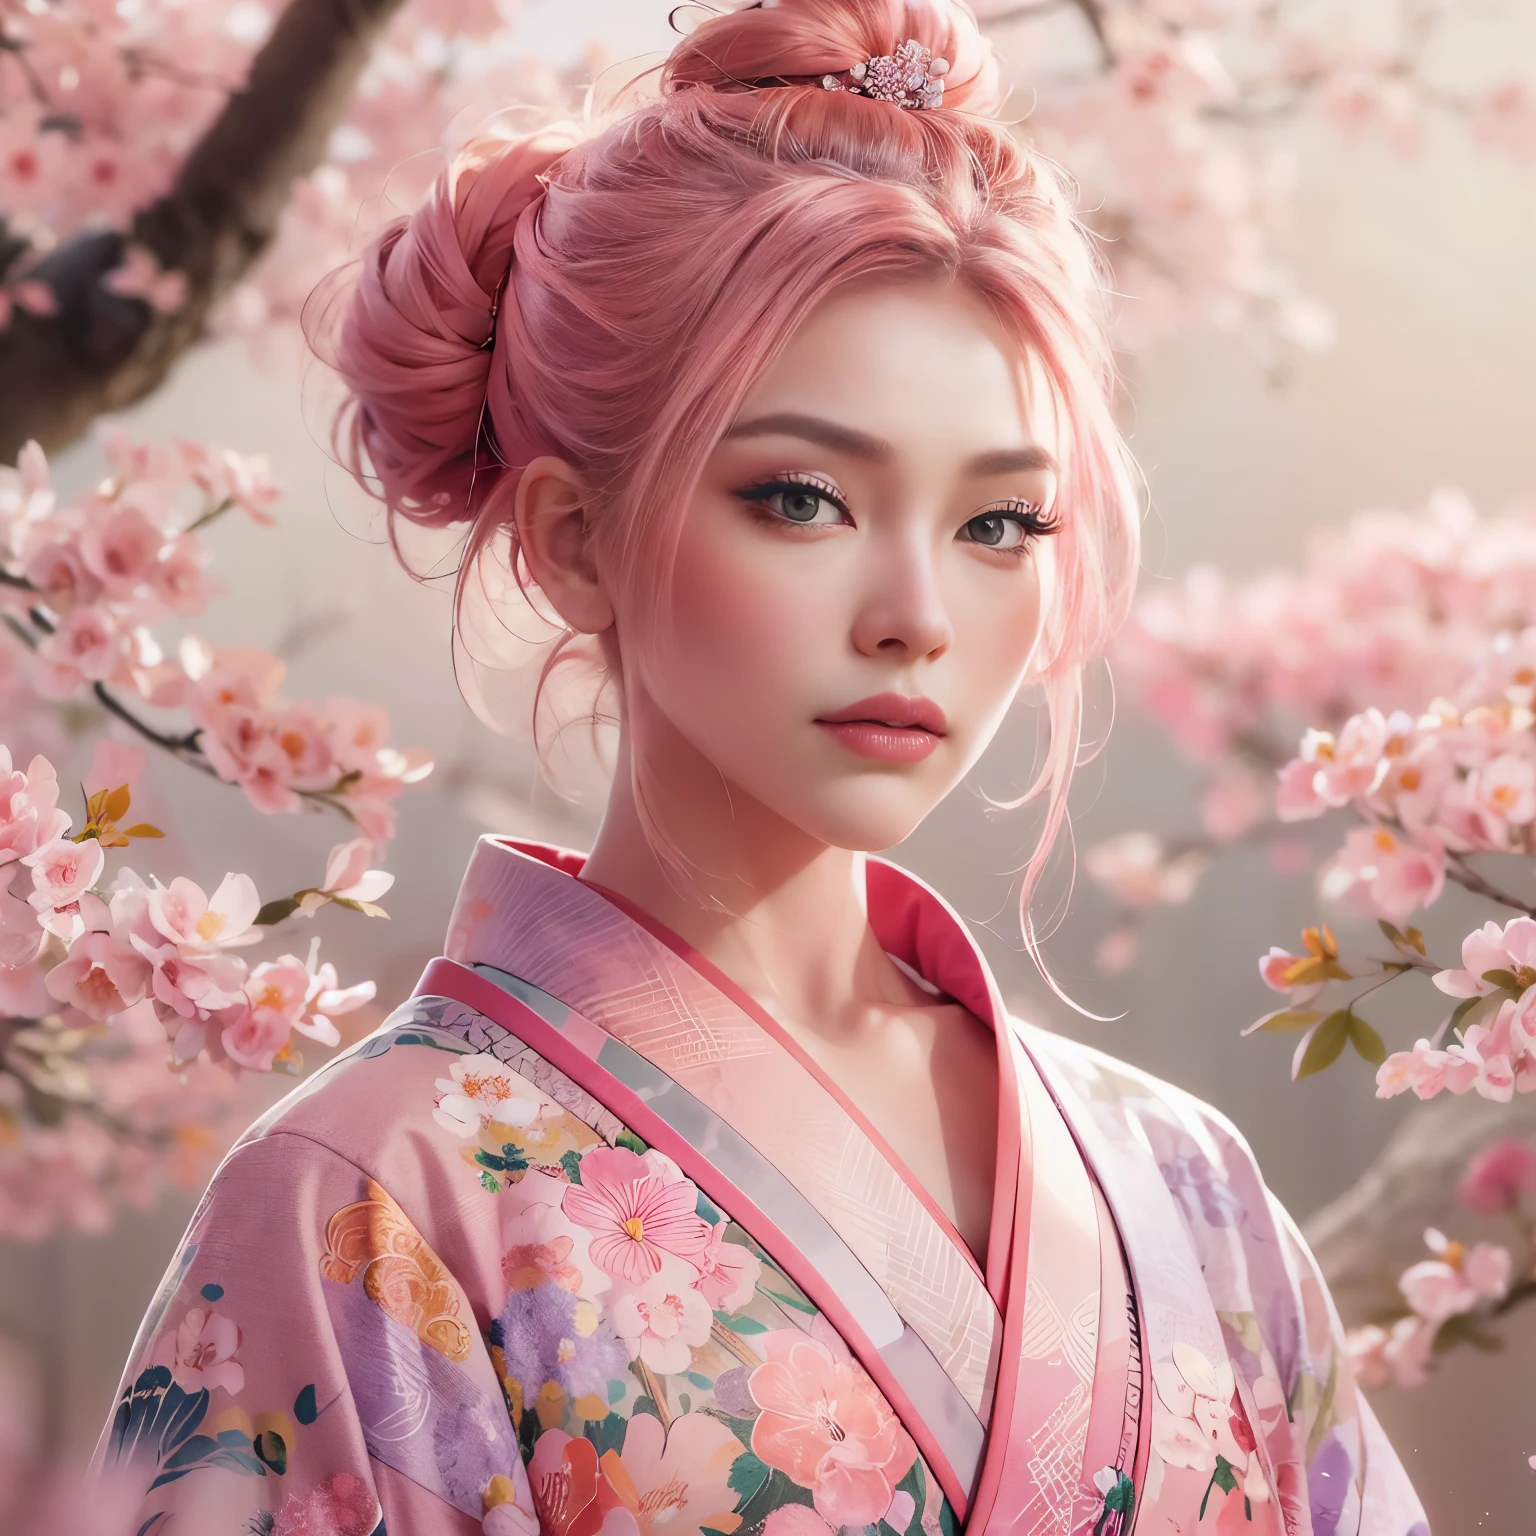 واقعية للغاية, مفصلة للغاية, وصورة عالية الدقة 16 كيلو لشاب, أنثى جميلة ذات وجه engfa. لديها شعر وردي على شكل كعكة علوية وبشرة شفافة, ويرتدون الكيمونو الياباني التقليدي الوردي بتصميم زهرة صغيرة. تجسد الصورة الجمال الأثيري وغموض عالم الروح. النمط مستوحى من الحساس, الجمالية الناعمة الموجودة في الفن الياباني التقليدي. كانت الخلفية مليئة بشجرة ساكورا الوردية.